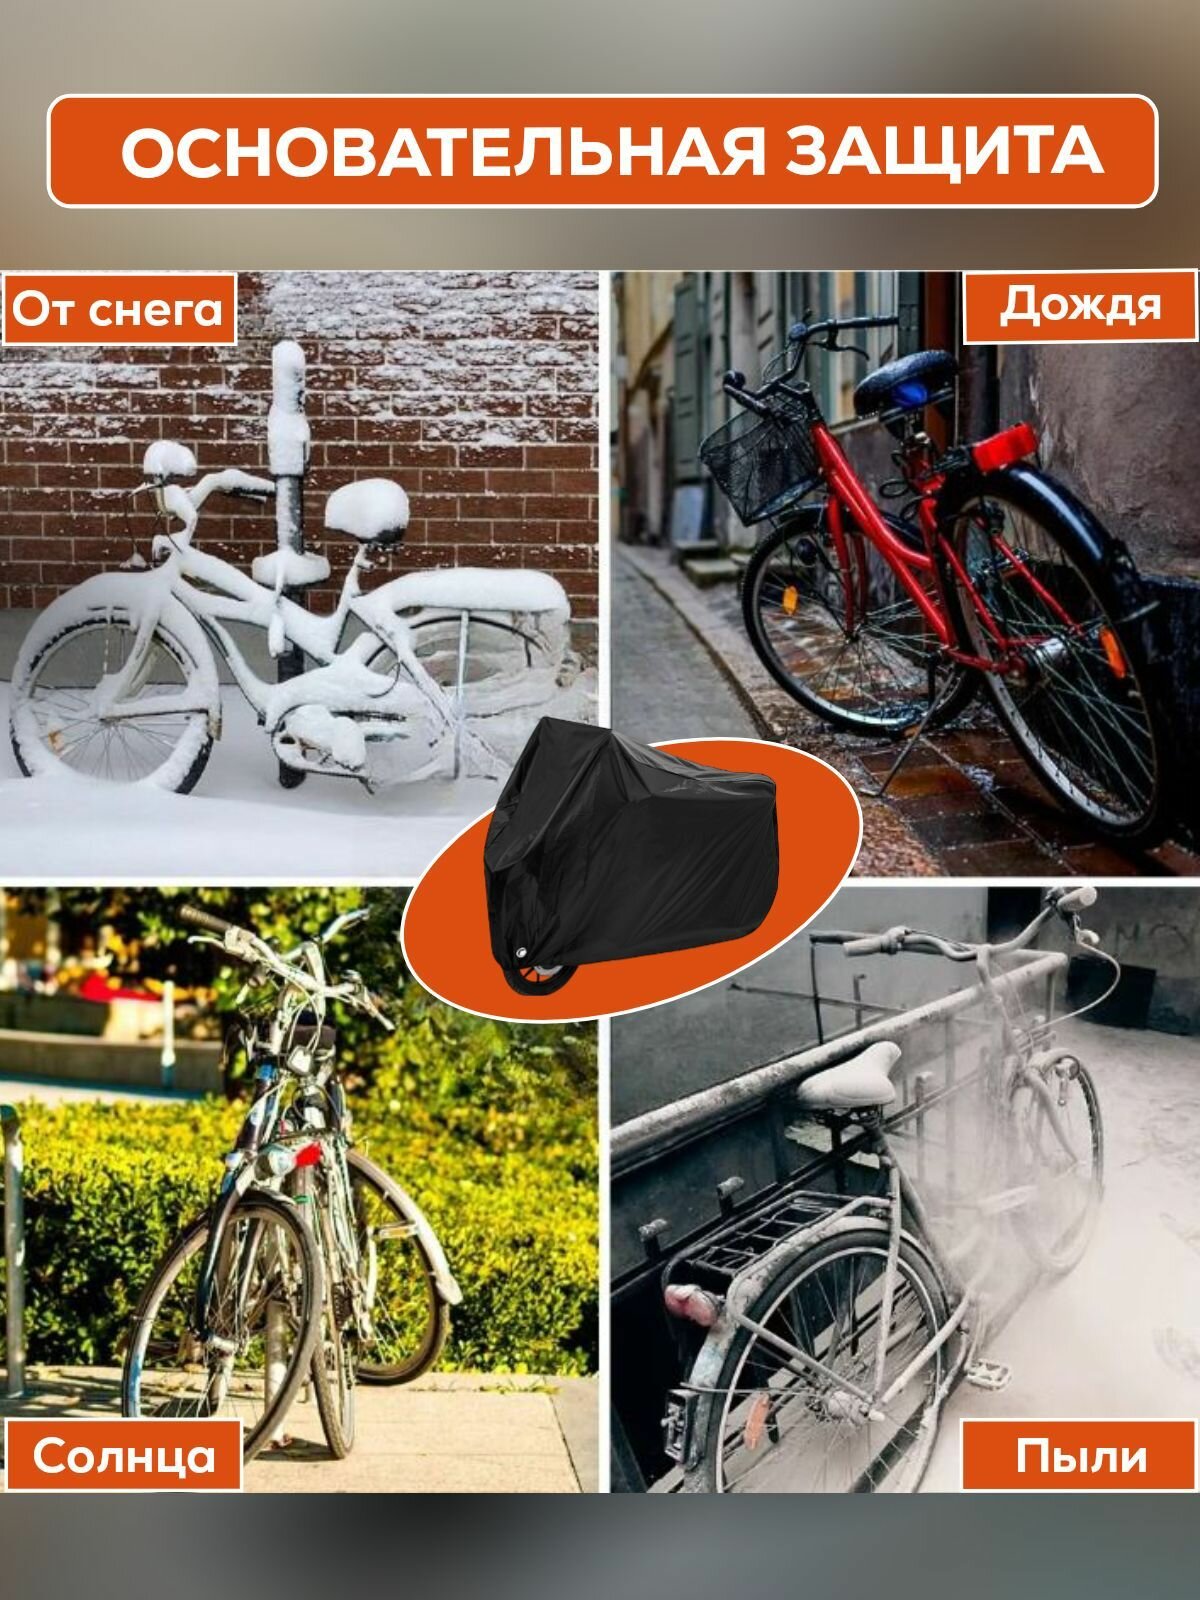 Защитный чехол для велосипеда, тент для мотоциклаЗащитный чехол для велосипеда, тент для мотоцикла